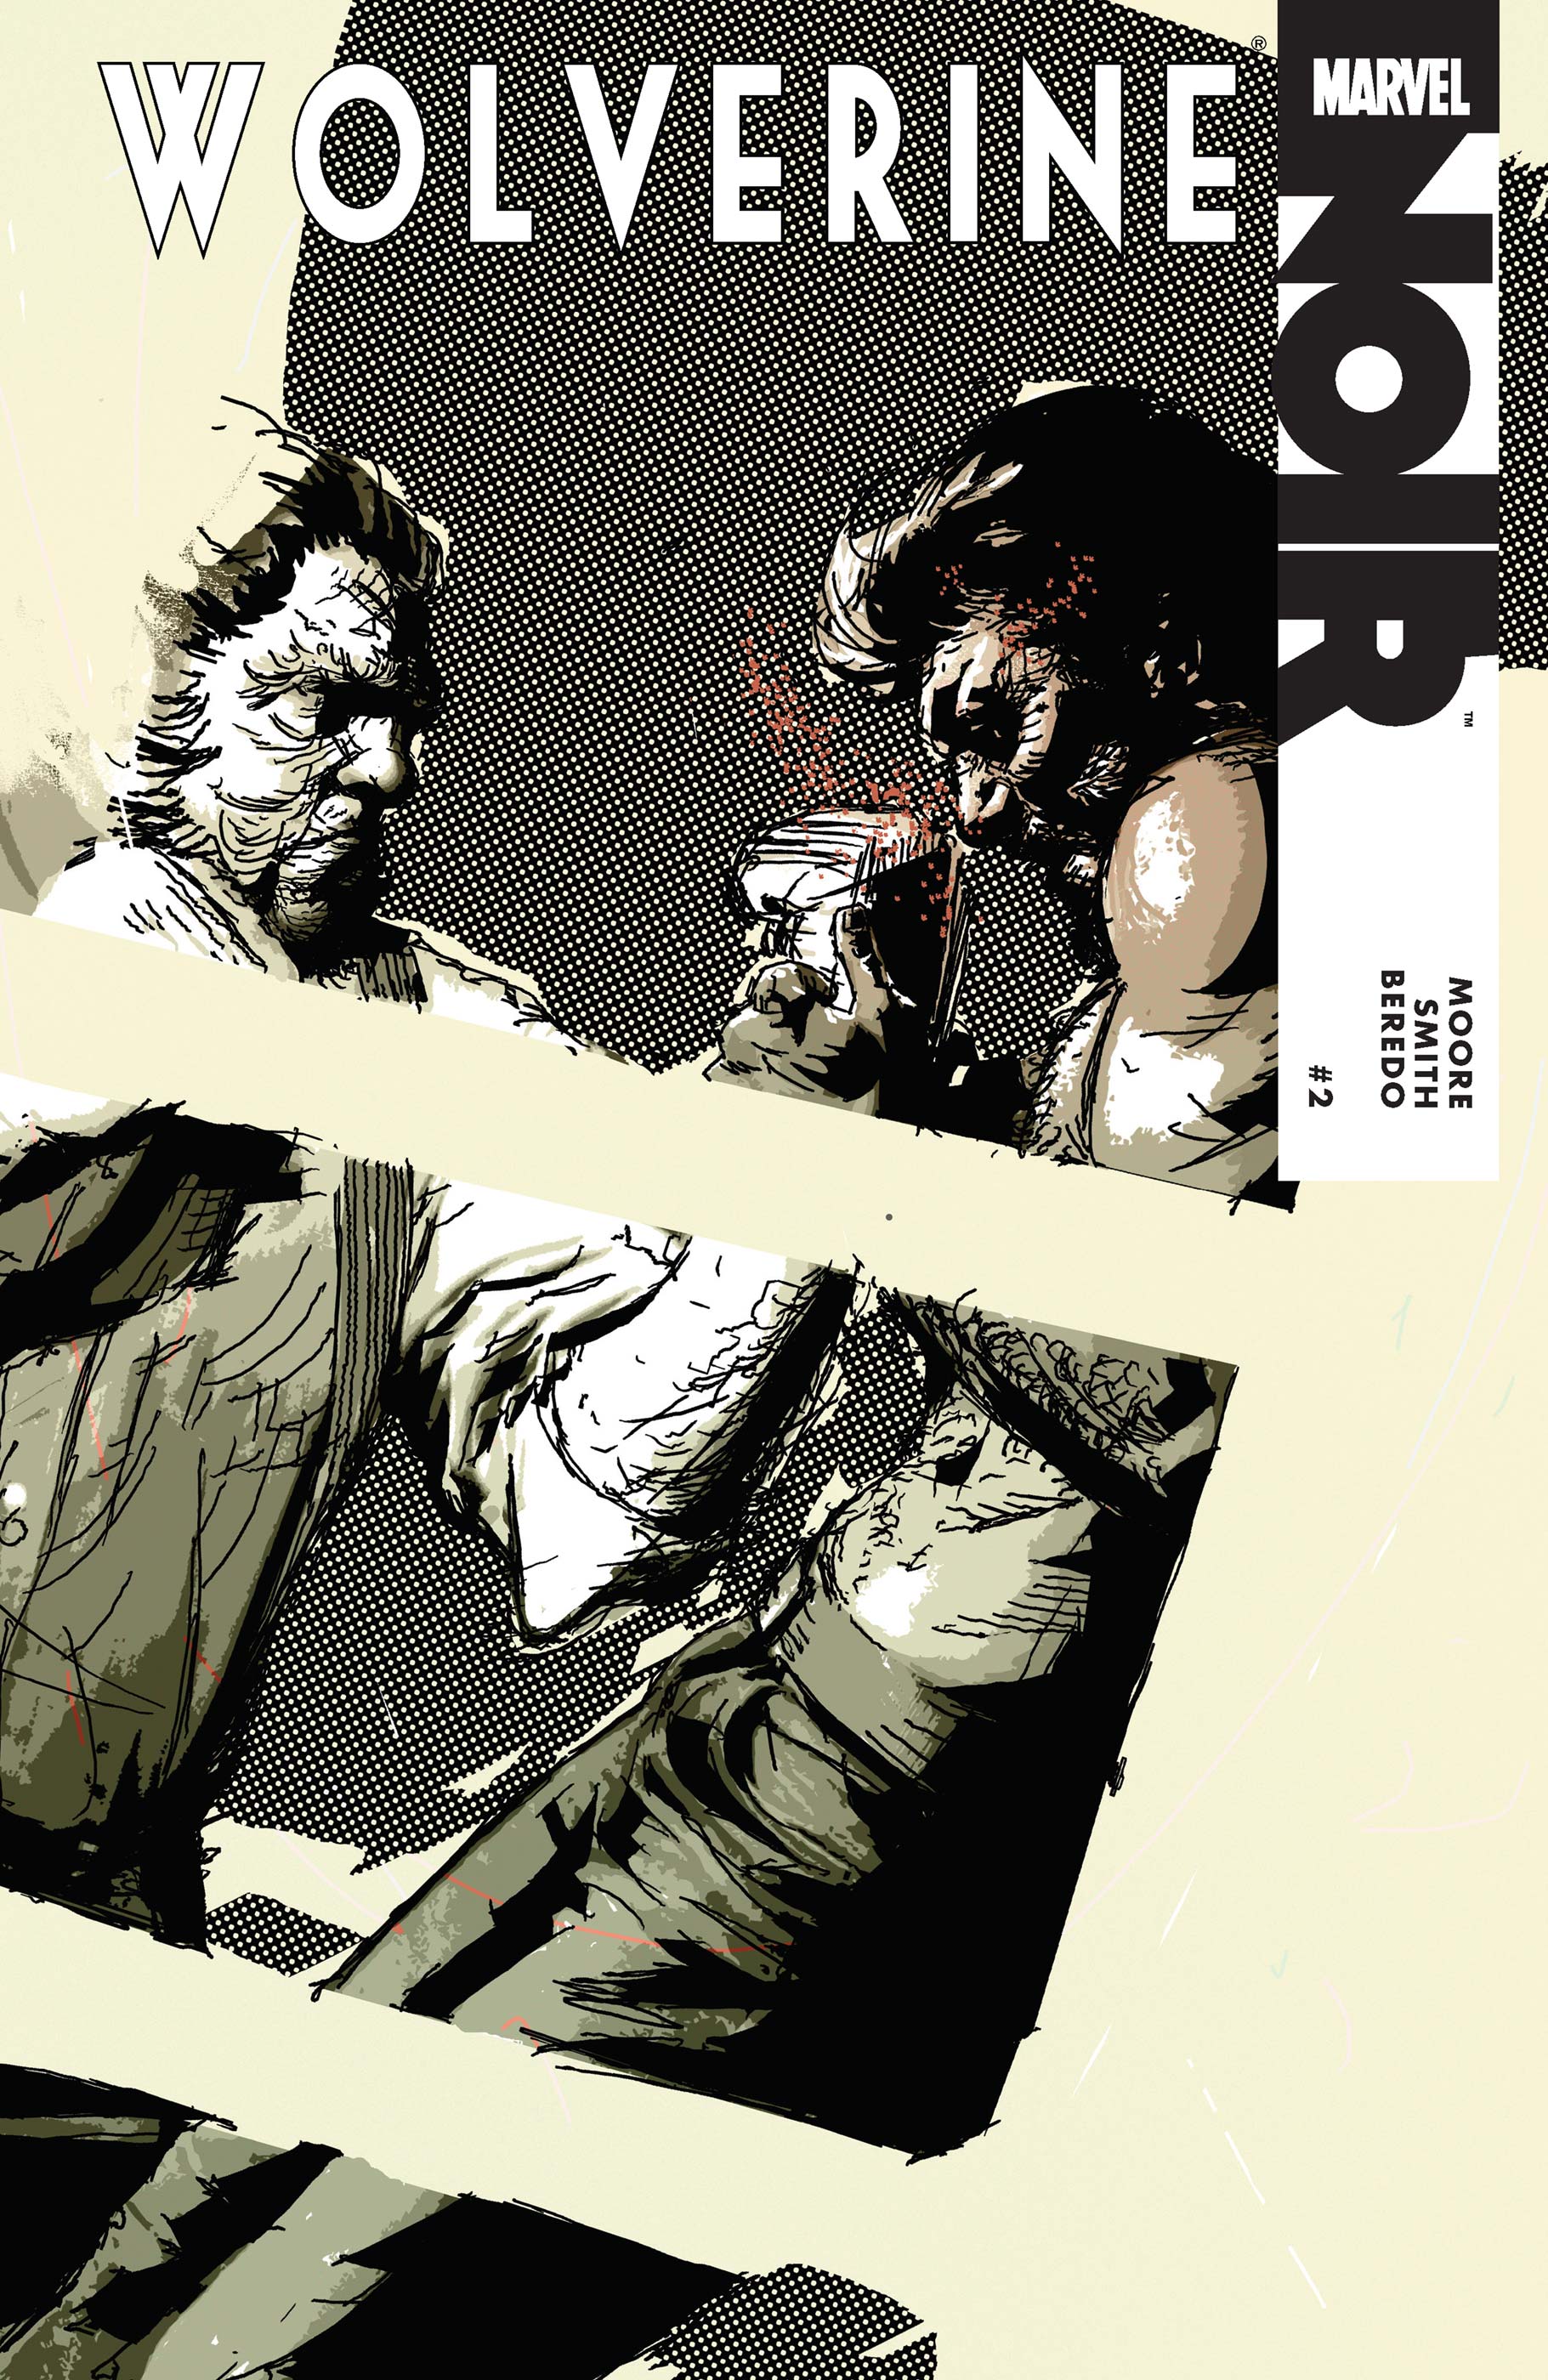 Wolverine Noir (2009) #2